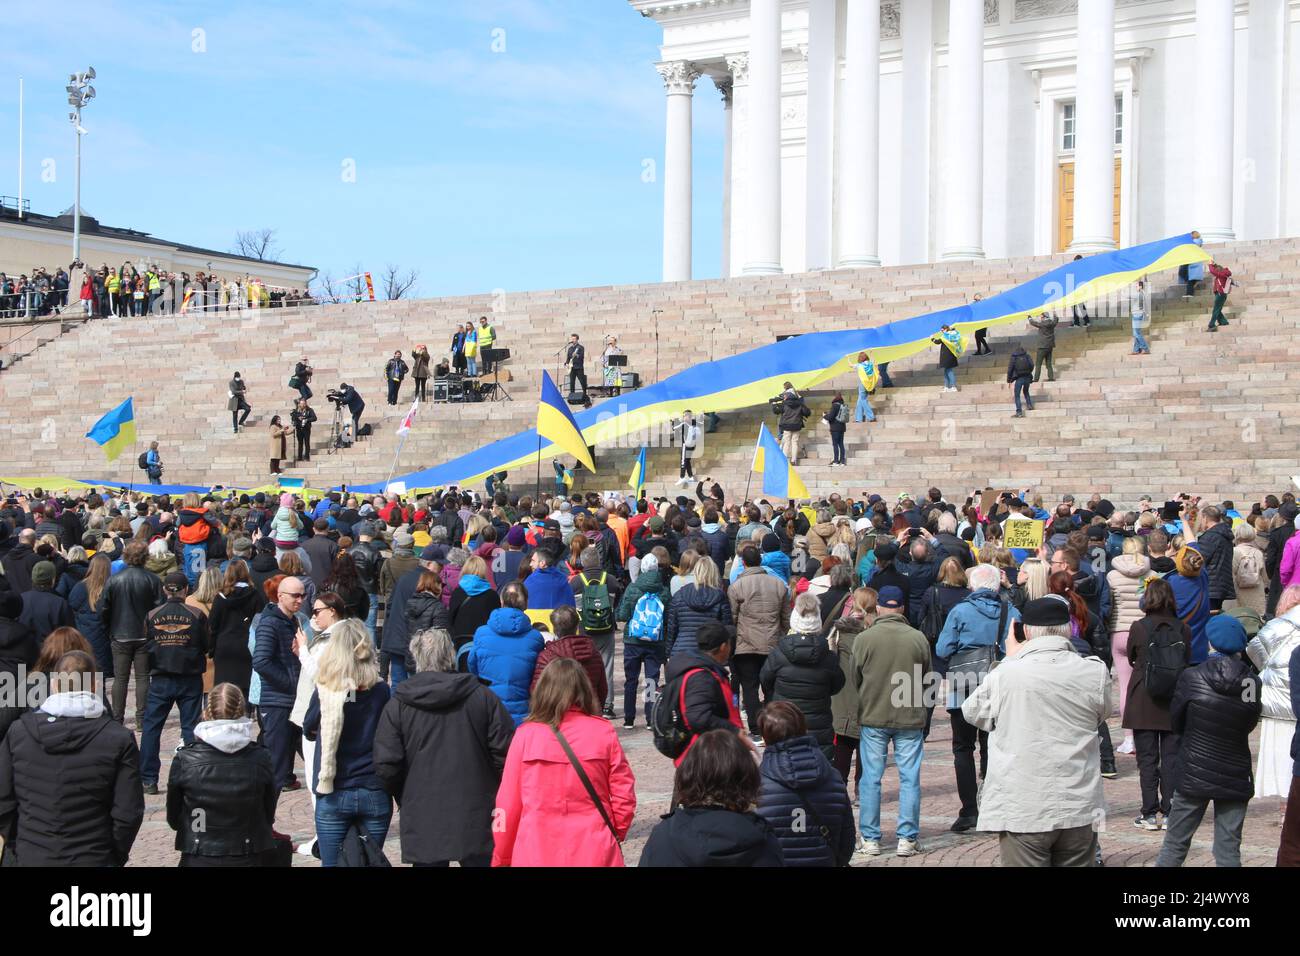 Estamos con la manifestación de Ucrania en la plaza del Senado, Helsinki, Finlandia, 18.4.2022 Foto de stock